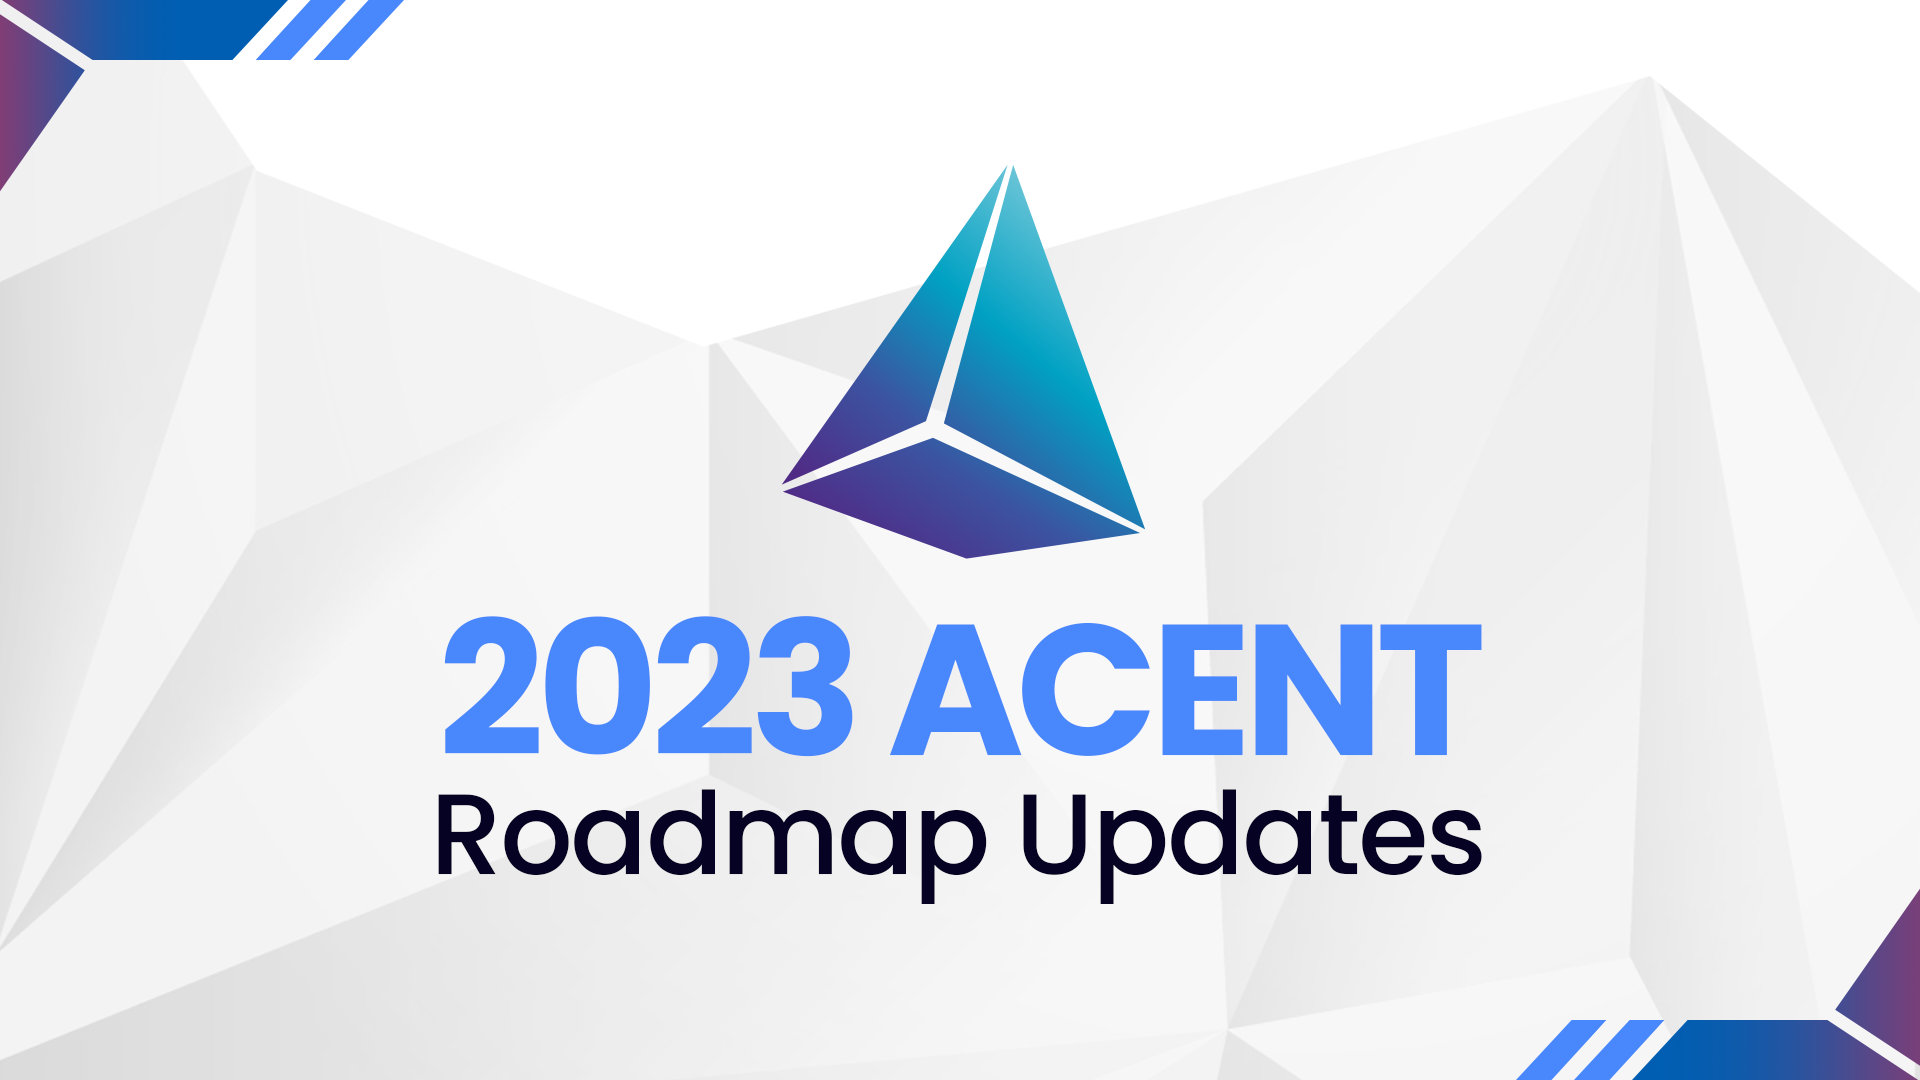 2023 Acent Roadmap Updates